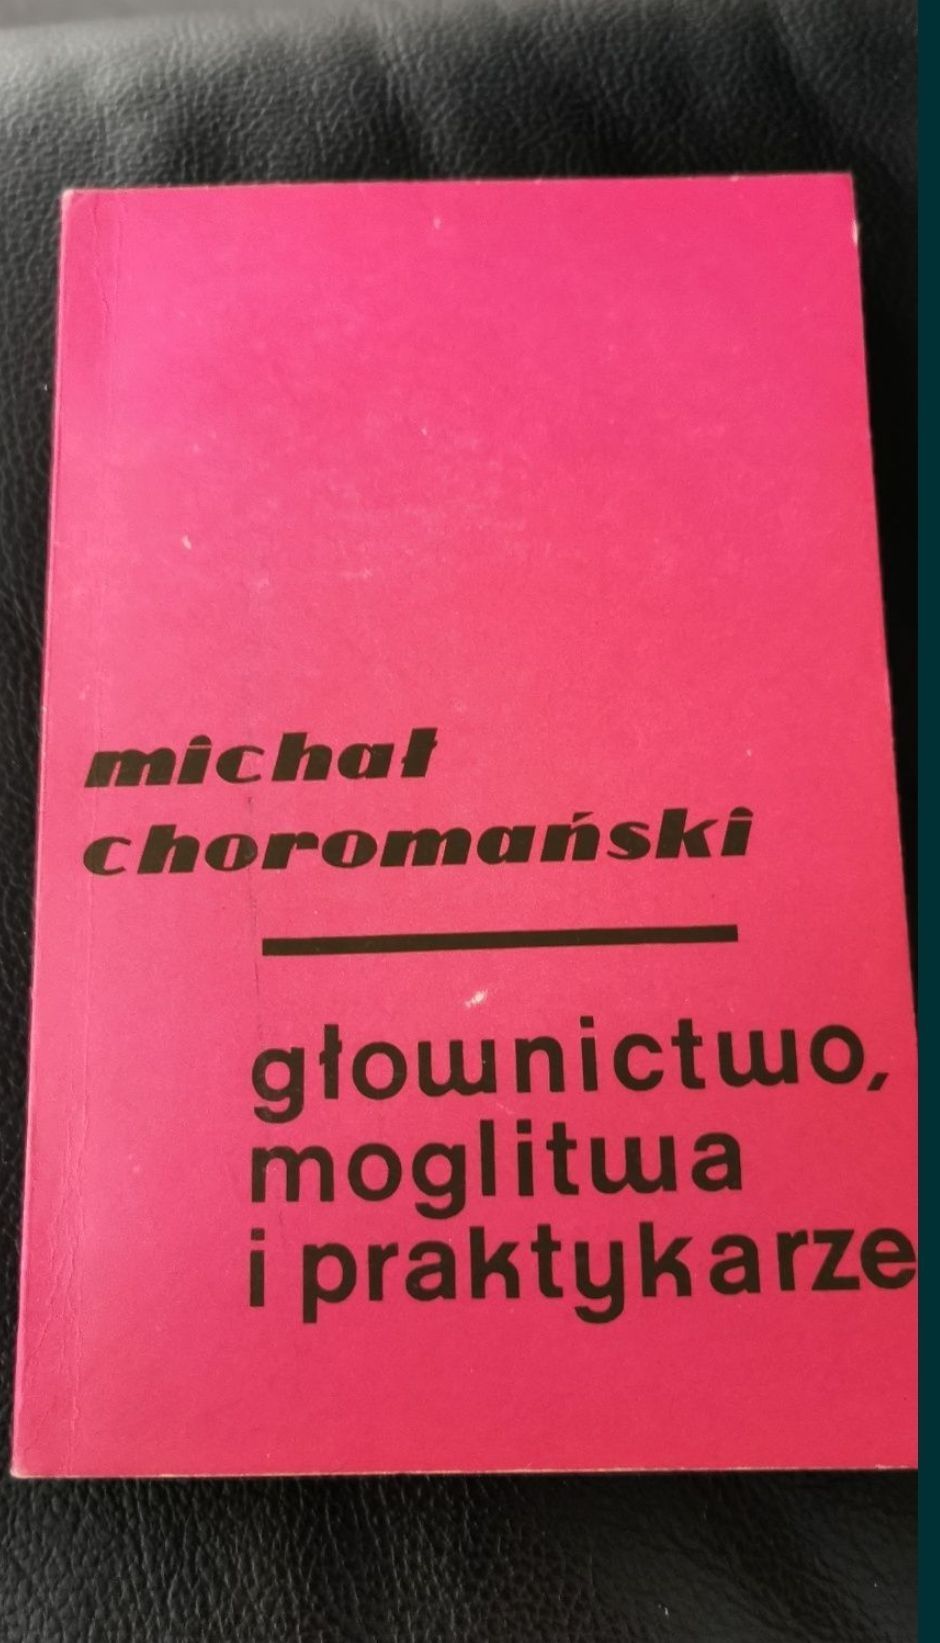 Głownictwo, moglitwa i praktykarze 
Michał Choromański